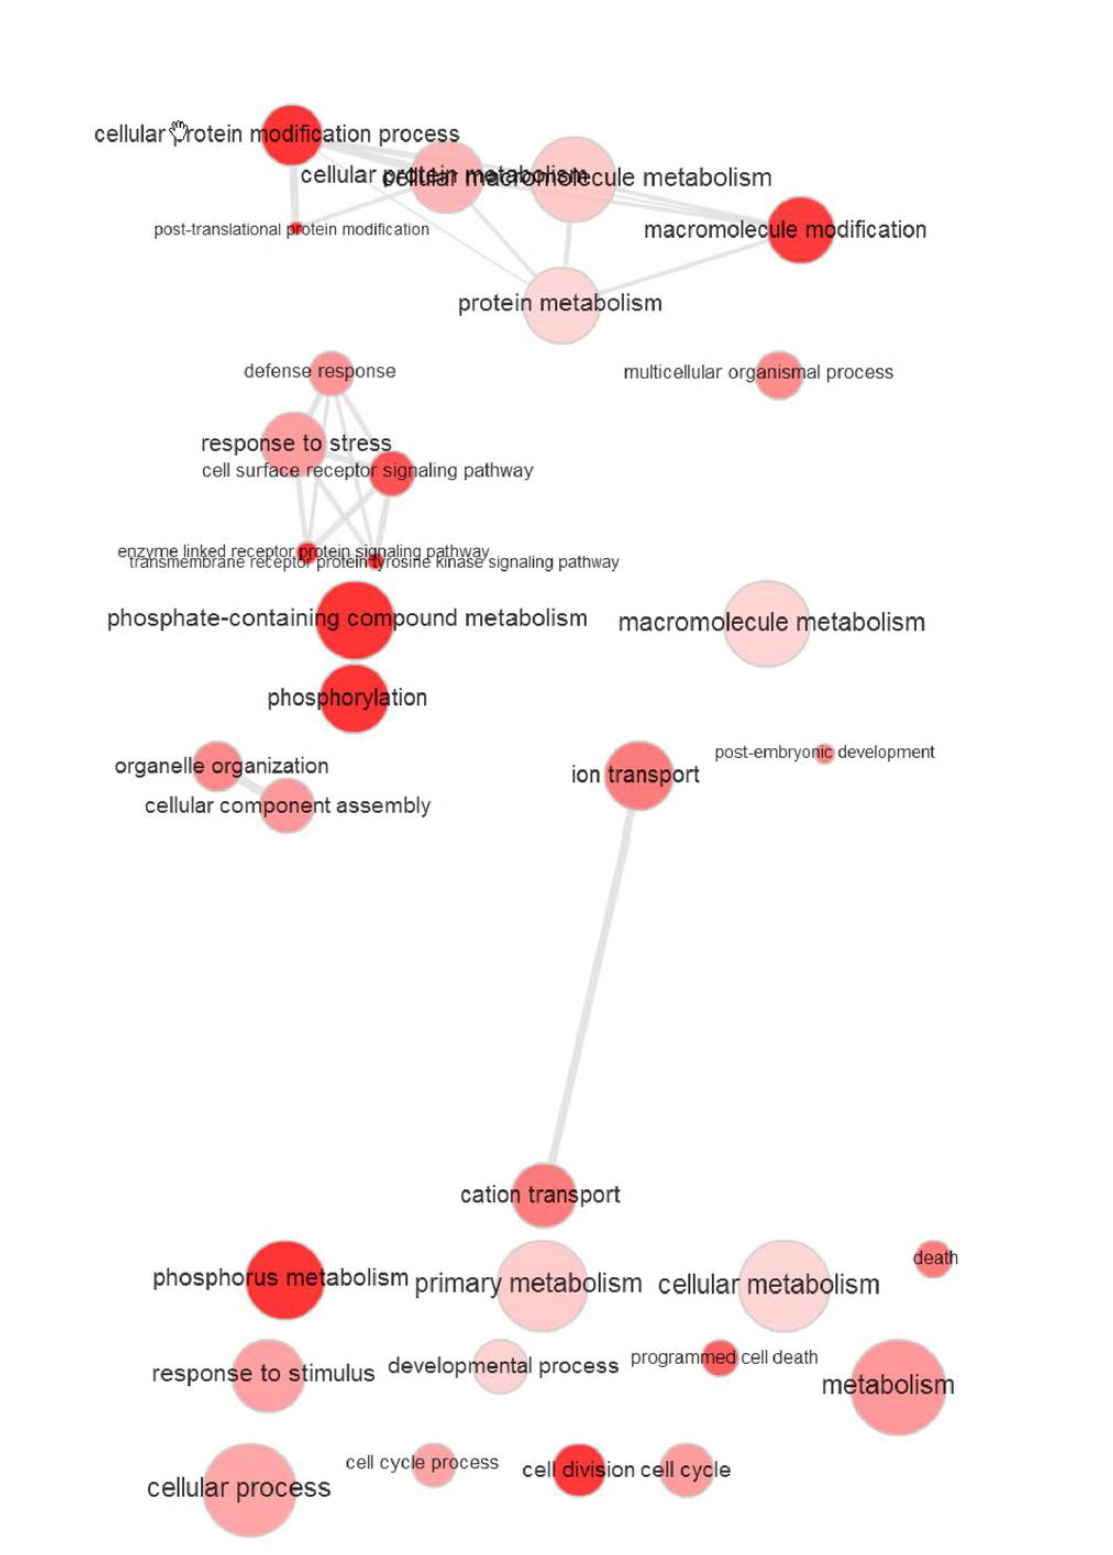 ISR 특이적 유전자들의 상호 네트워크